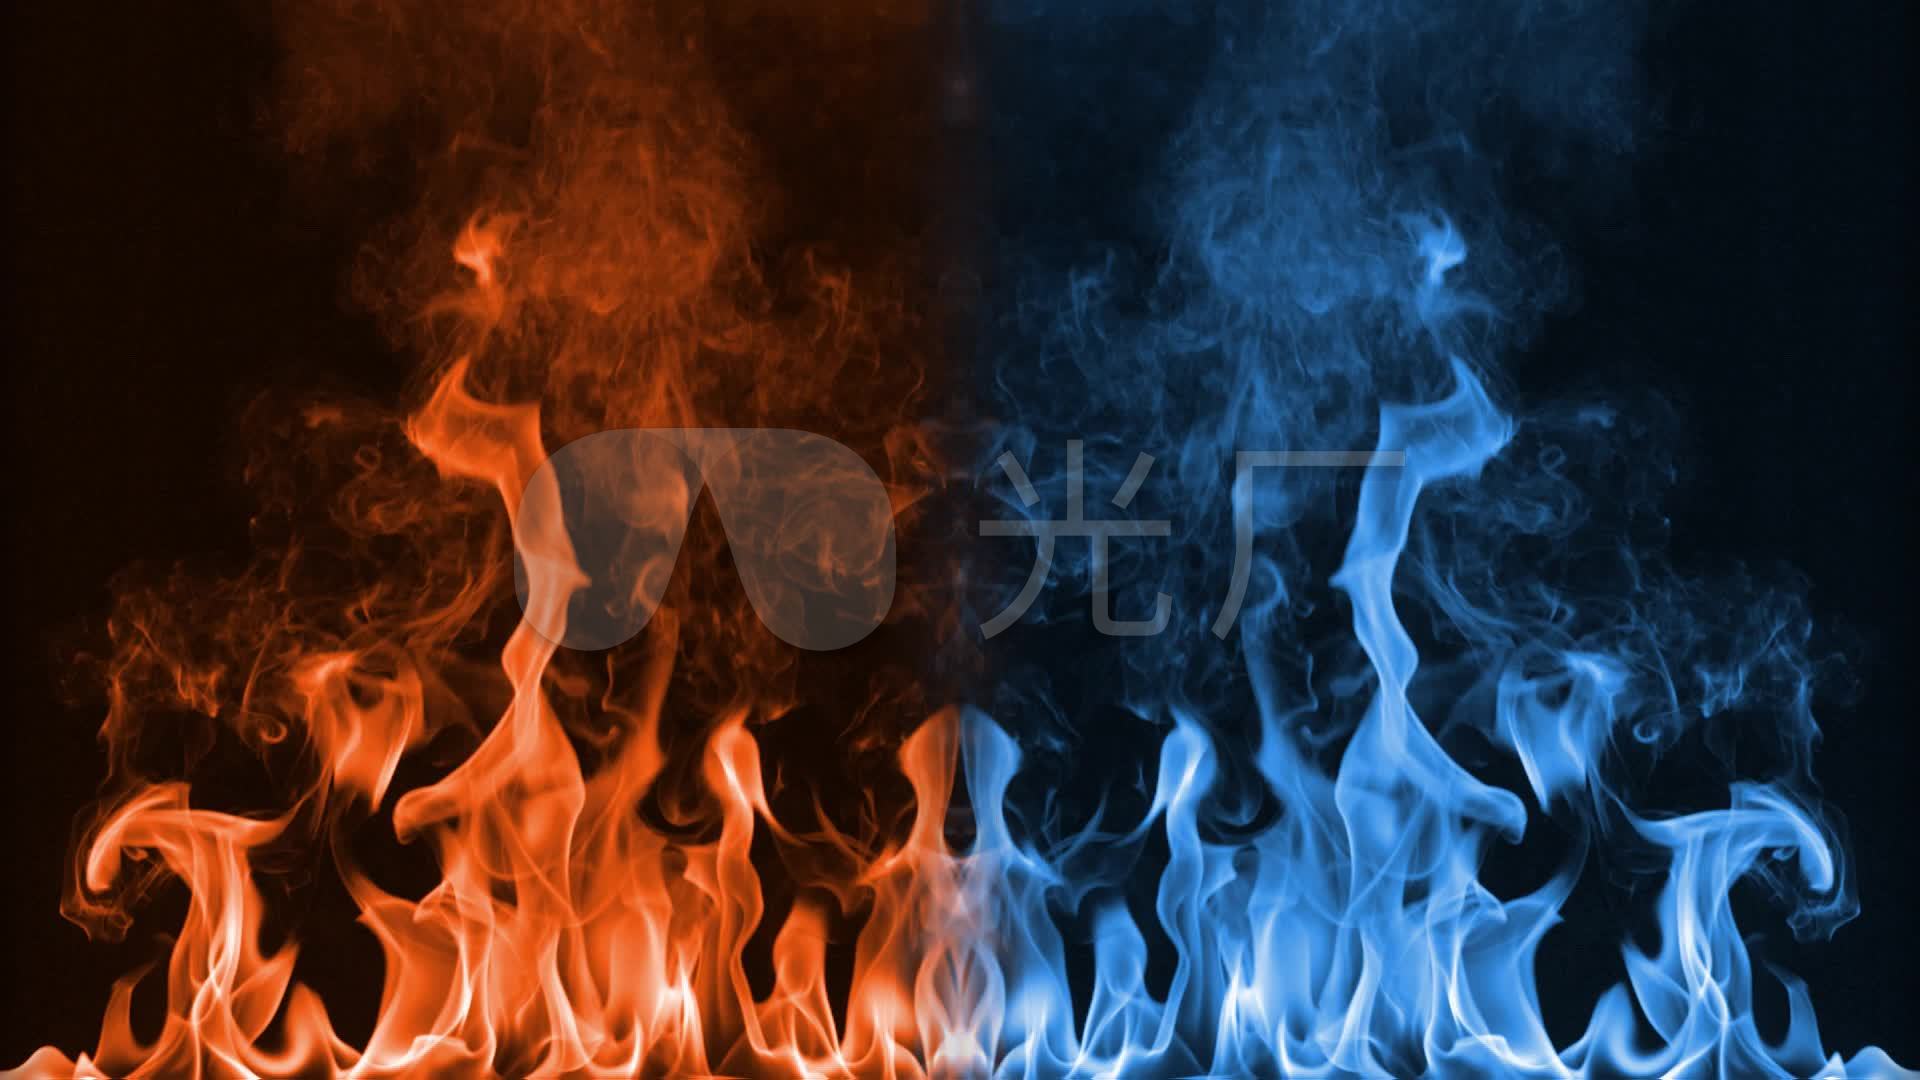 火焰背景图片素材-正版创意图片500193438-摄图网